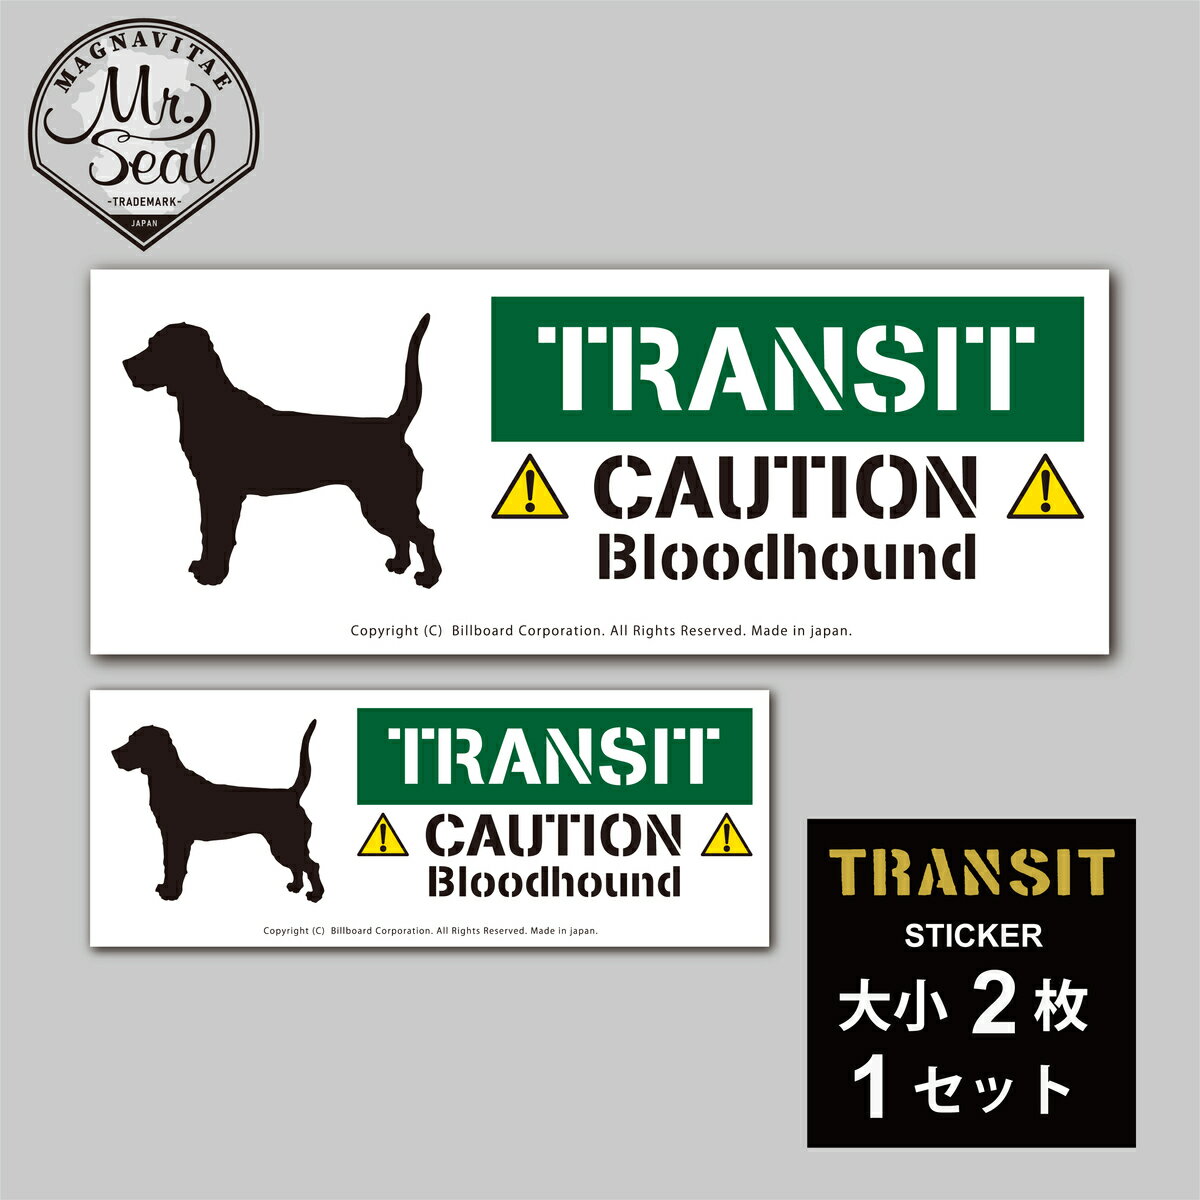 商品情報サイズLサイズ22.5cm×8.5mm、Sサイズ15cm×5.5mm材質ラミネート加工済み塩ビシール商品説明耐候性、耐水性に優れた屋内外で使用できる塩ビ素材のステッカーです。TRANSIT Sticker [Bloodhound]愛犬ステッカー/ブラッドハウンド 愛犬ステッカー　トランジット　犬乗ってますシール　ウォールステッカーDIY、キャンプ、アウトドア好きな方に。ワンちゃん好きなお友達へのプレゼントにも喜ばれます！ 35犬種以上のバリエーション　アメリカンデザインのステッカー　 玄関や愛犬のハウス、愛車に貼ってほしいです！大きいサイズと小さいサイズ各一枚でセットになってます。素材：塩ビシール（屋内/屋外）サイズ：Lサイズ225mm×85mm、Sサイズ150mm×55mm（各1枚）商品のカラーについて： 画面上の色調はモニターの機種やブラウザなどの設定により、実際の商品と異なる場合があります。ご了承の上ご注文くださいませ お住いの外回り、ポストや車にも貼れます！ 初心者でも簡単に「貼れるはがせる」説明書付き！ 大サイズと小サイズの2枚1セット。送料無料です。 愛犬ライフにちょっとしたアクセントを！ アメリカンな雰囲気漂うシンプルでおしゃれなデザイン キャンプギアや愛車、プレゼントにもおススメ！ ミスターシールでは毎日を心地よく過ごすために住宅、ショップ、オフィス向けのオリジナルのインテリア雑貨、サインボード、ステッカーなどを販売しています。専属デザイナーがデザインしたおしゃれなアイテムばかり。毎日長い時間を過ごすオフィスやショップ、自分のお部屋やおうちじかんをカッコよく飾り付けして満喫しちゃいましょう！！ 1